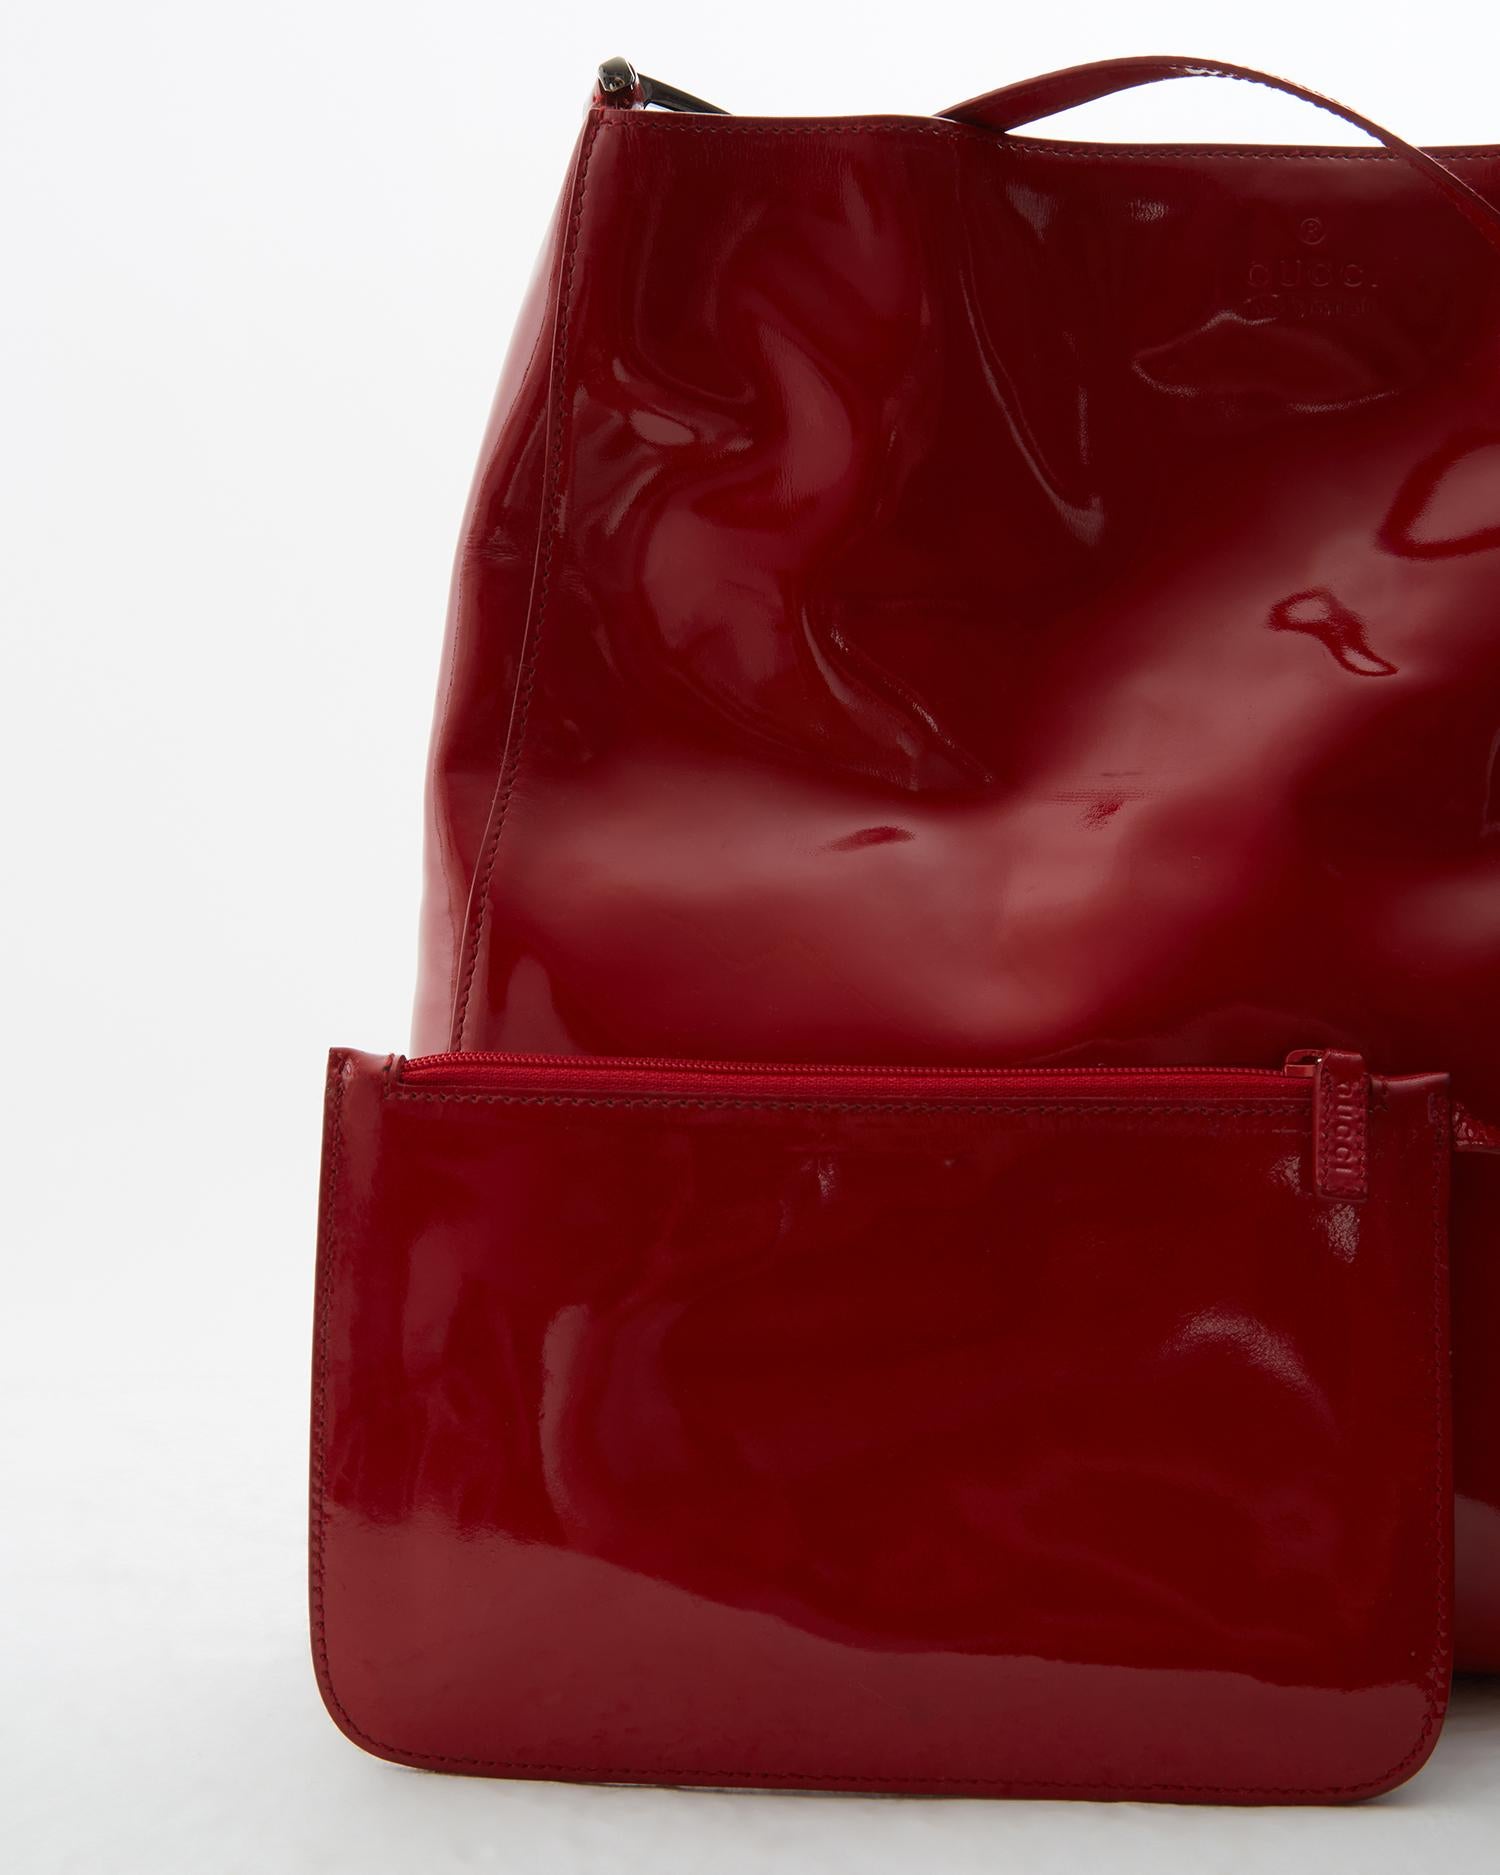 Bolso bandolera Gucci by Tom Ford en charol rojo con anillo metálico, fw 1997  5